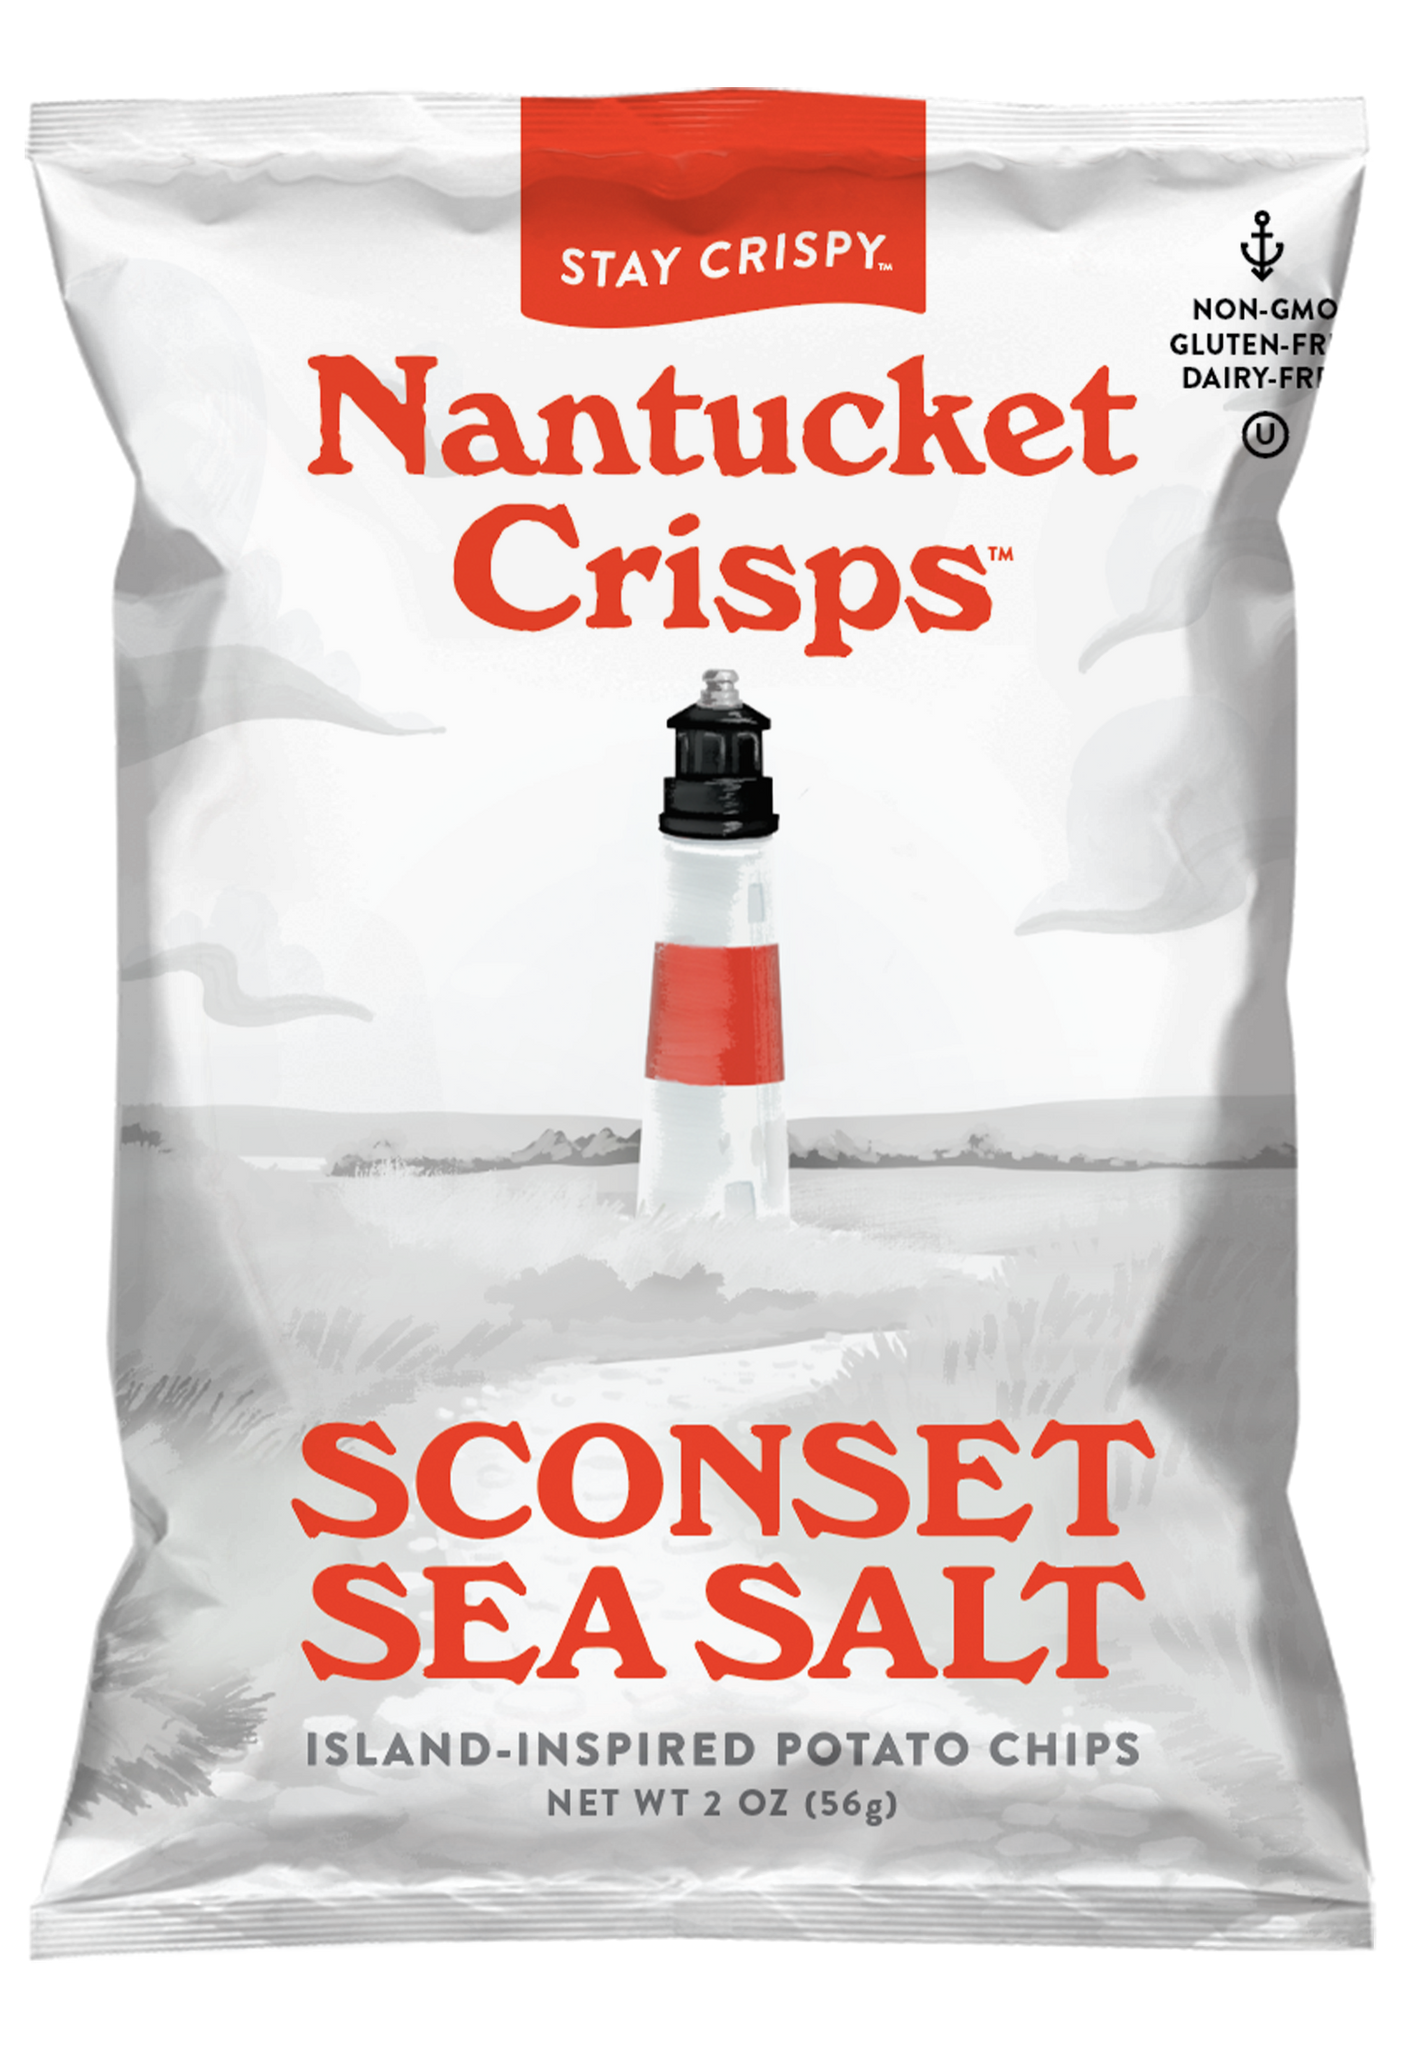 Sconset Sea Salt